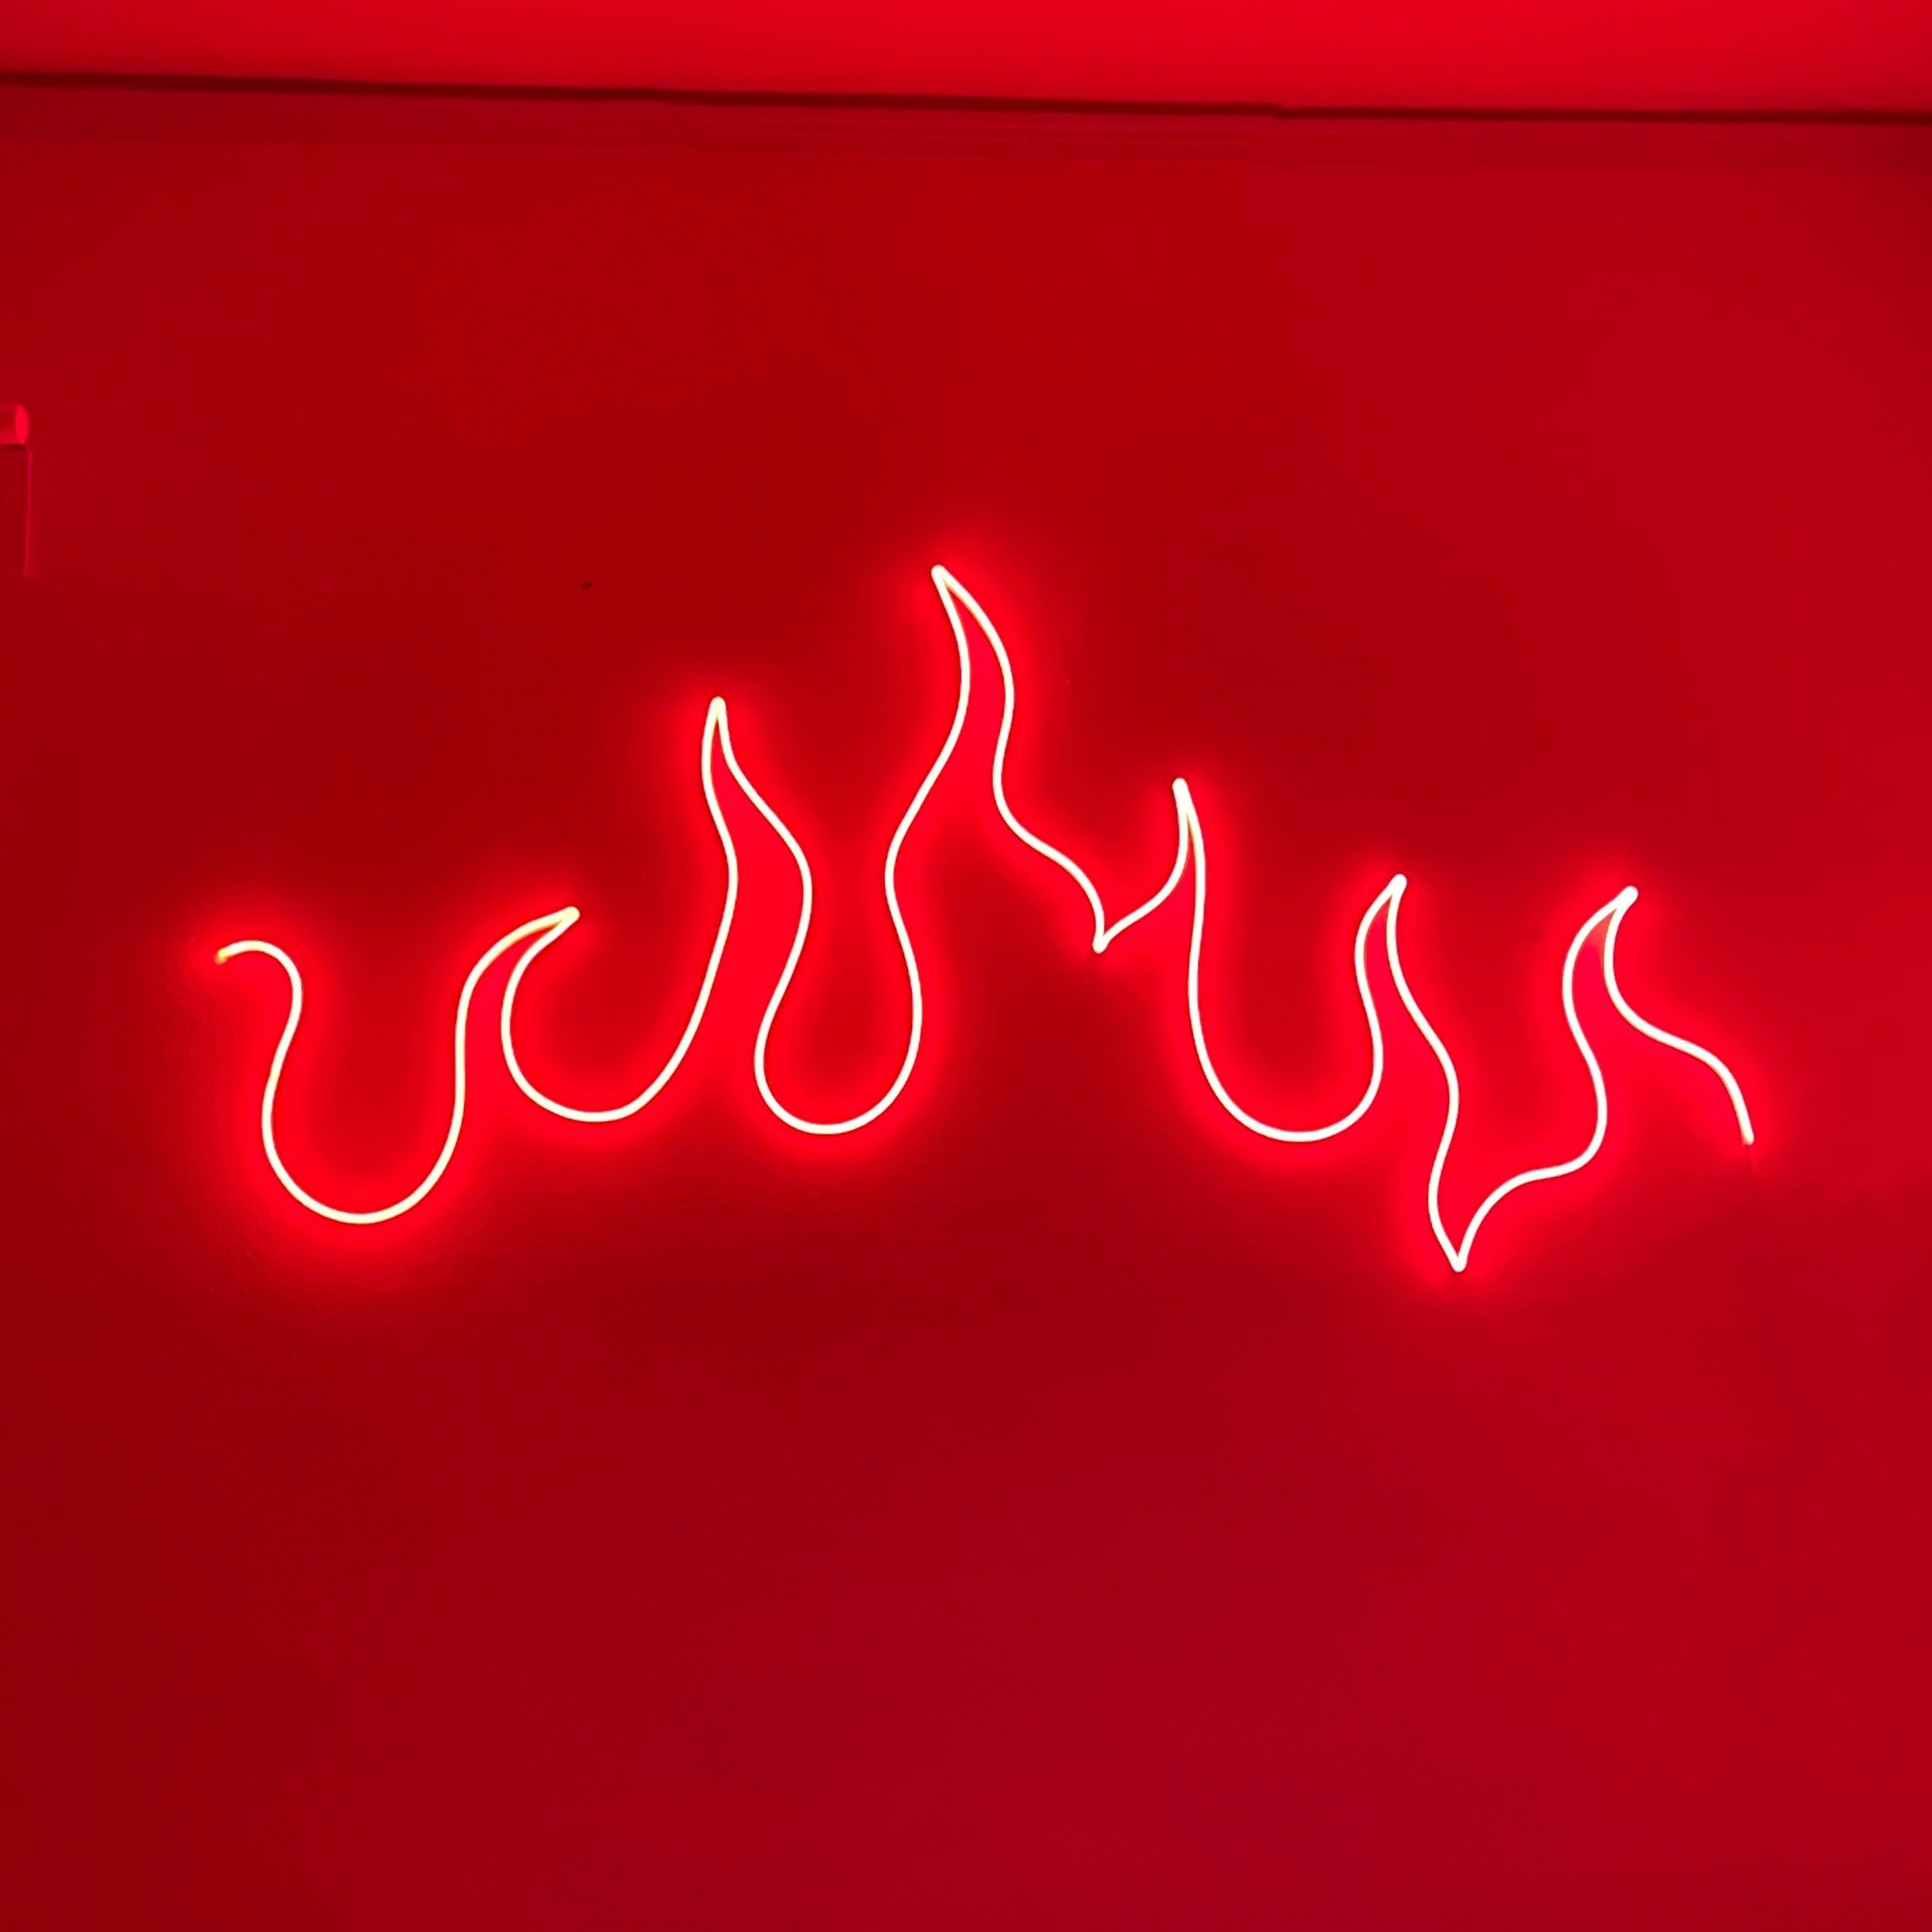 Fundación estudio presidente Neon Light Sign for Wall Fire LED Light Neon Sign Art - Etsy